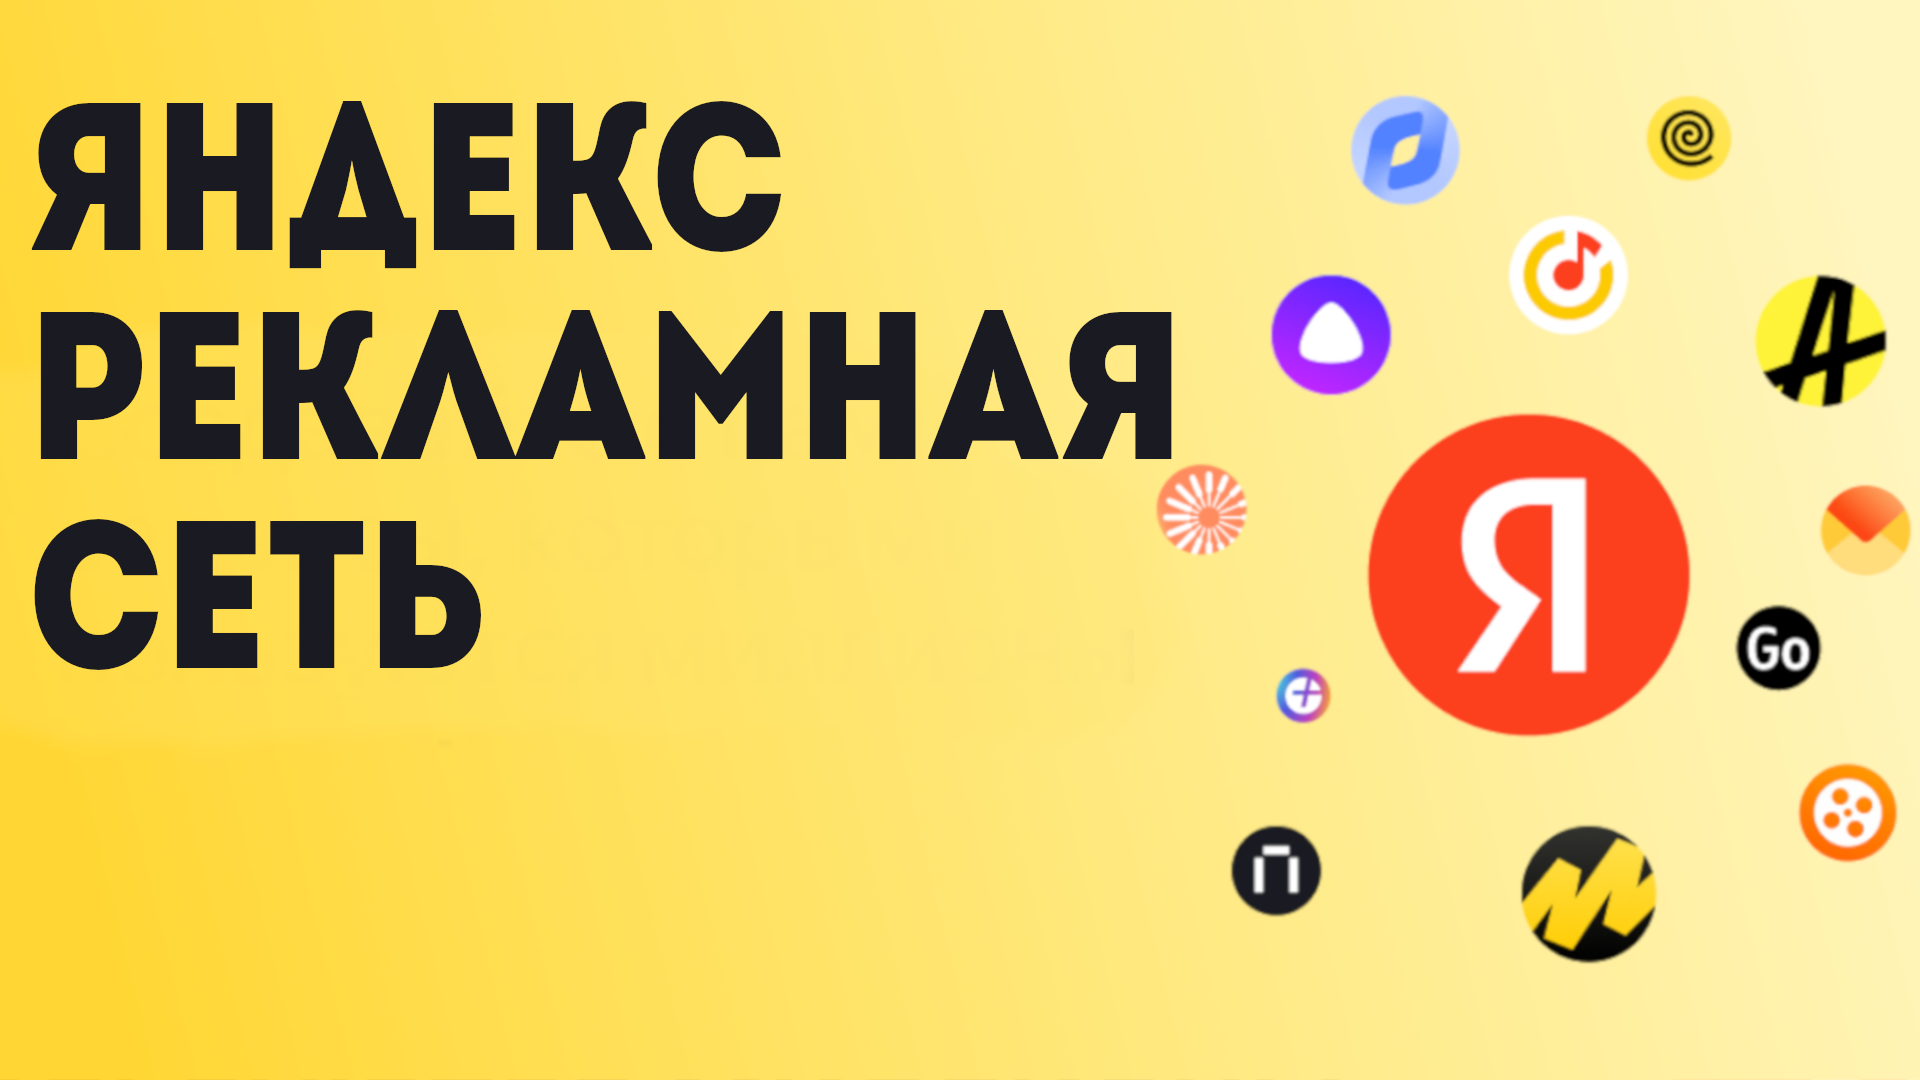 Яндекс рекламная сеть